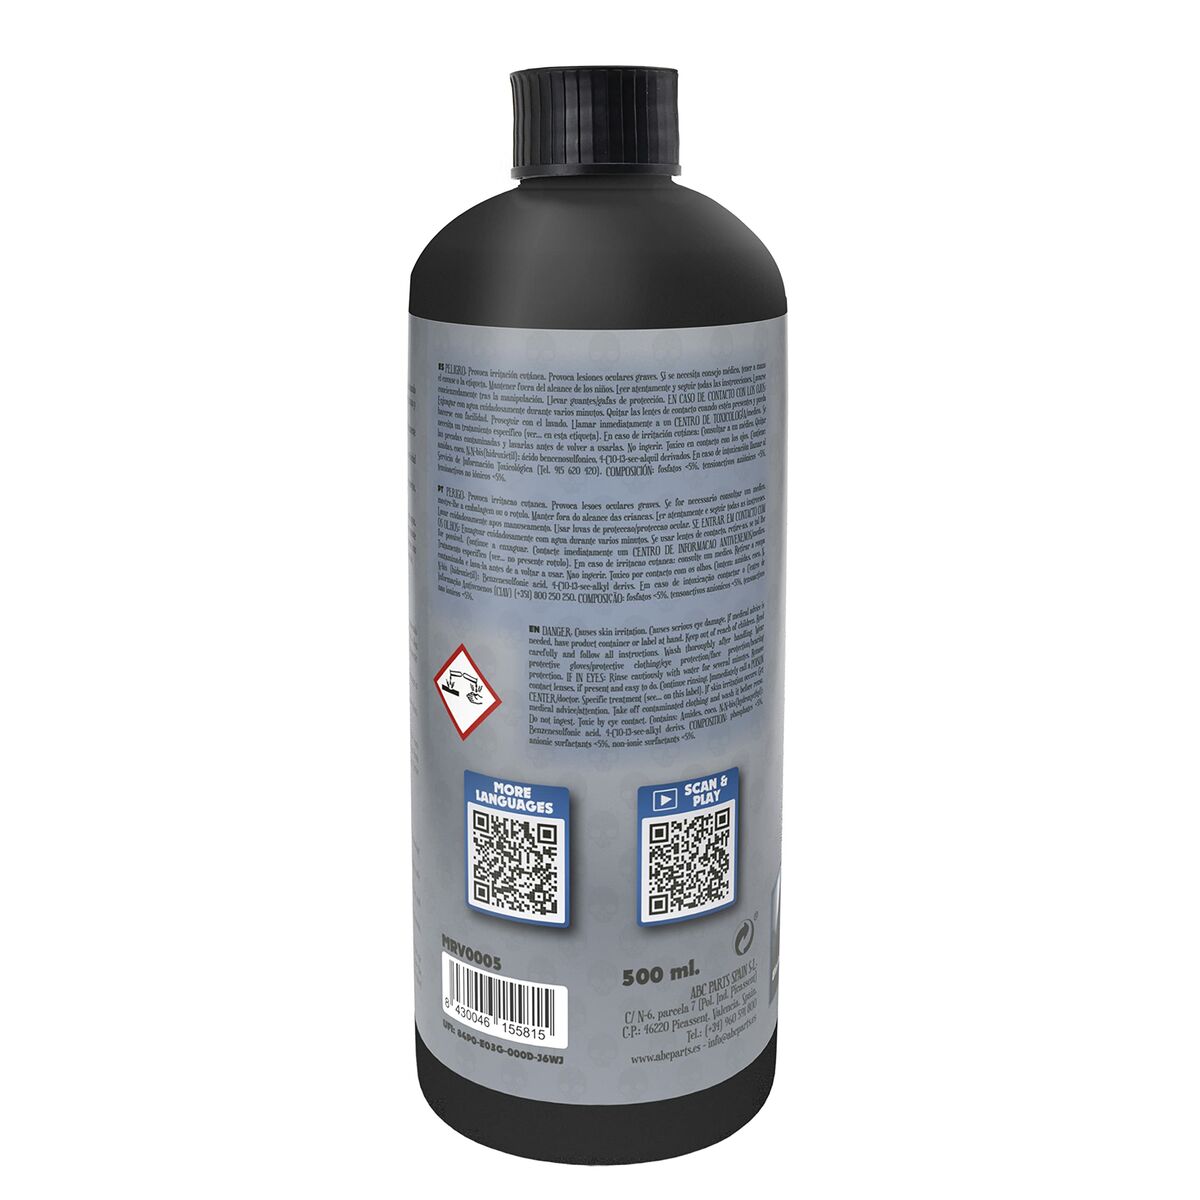 Detergente para automóvel Motorrevive 500 ml